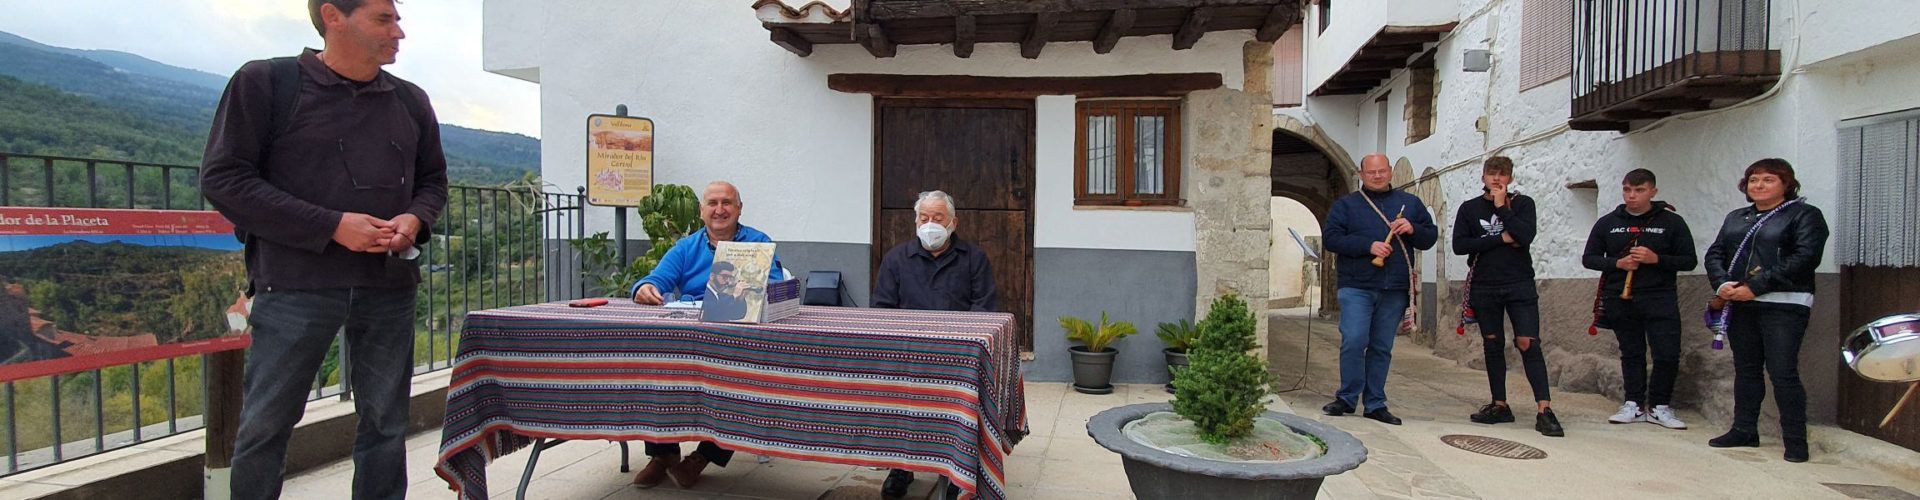 Vídeos: “Tocates originals per a dolçaina” a Vallibona, de Julià Pastor